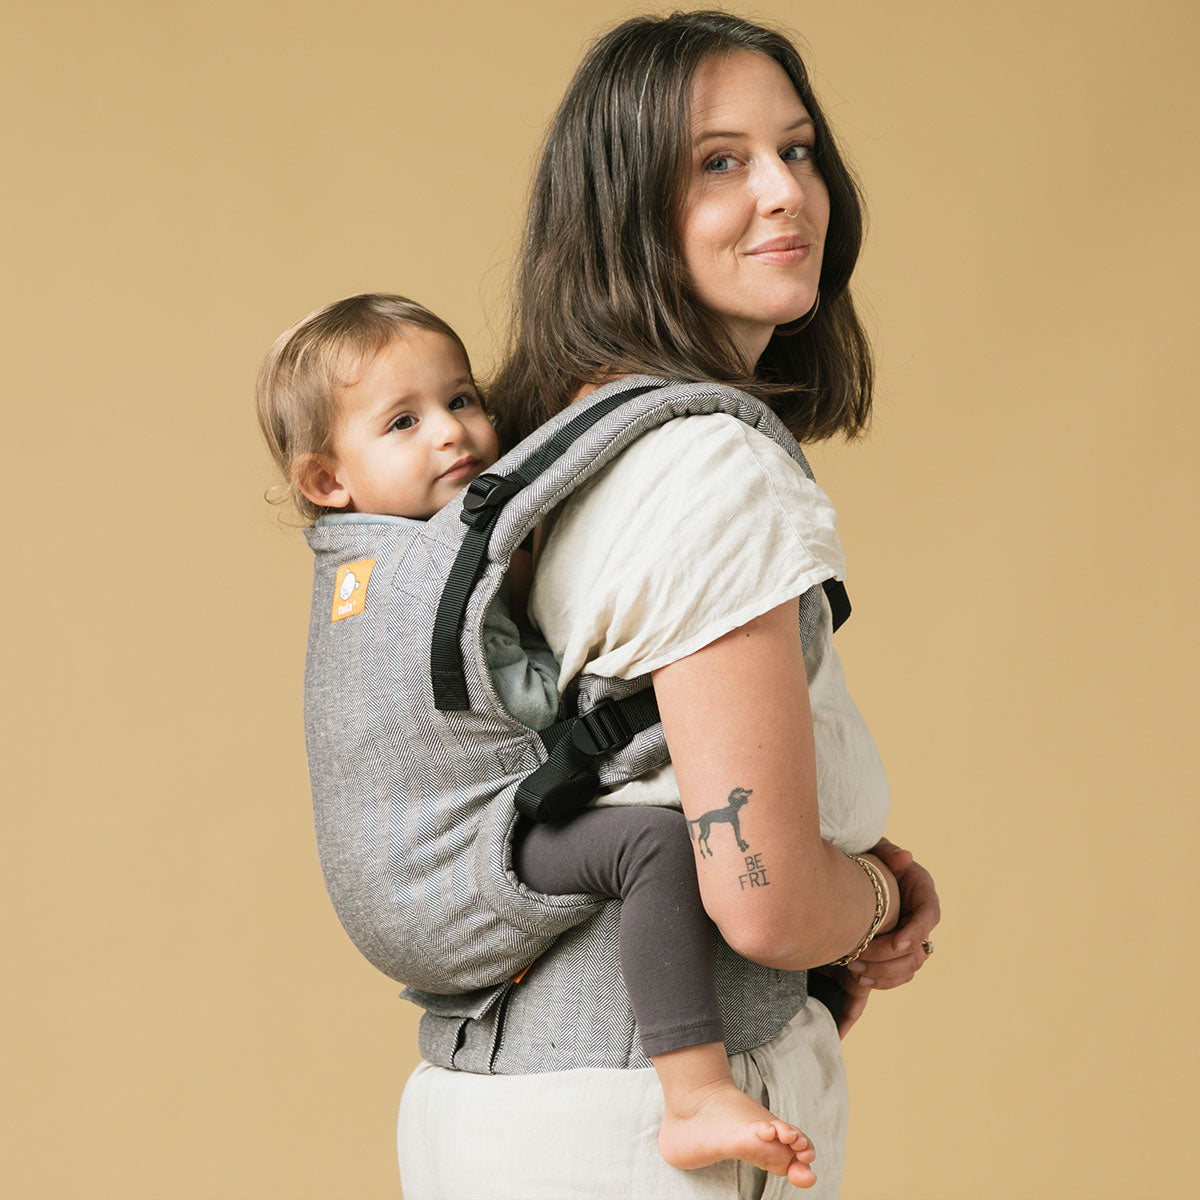 Äiti kantaa lastaan selässään Tula Free-to-Grow kantorepussa